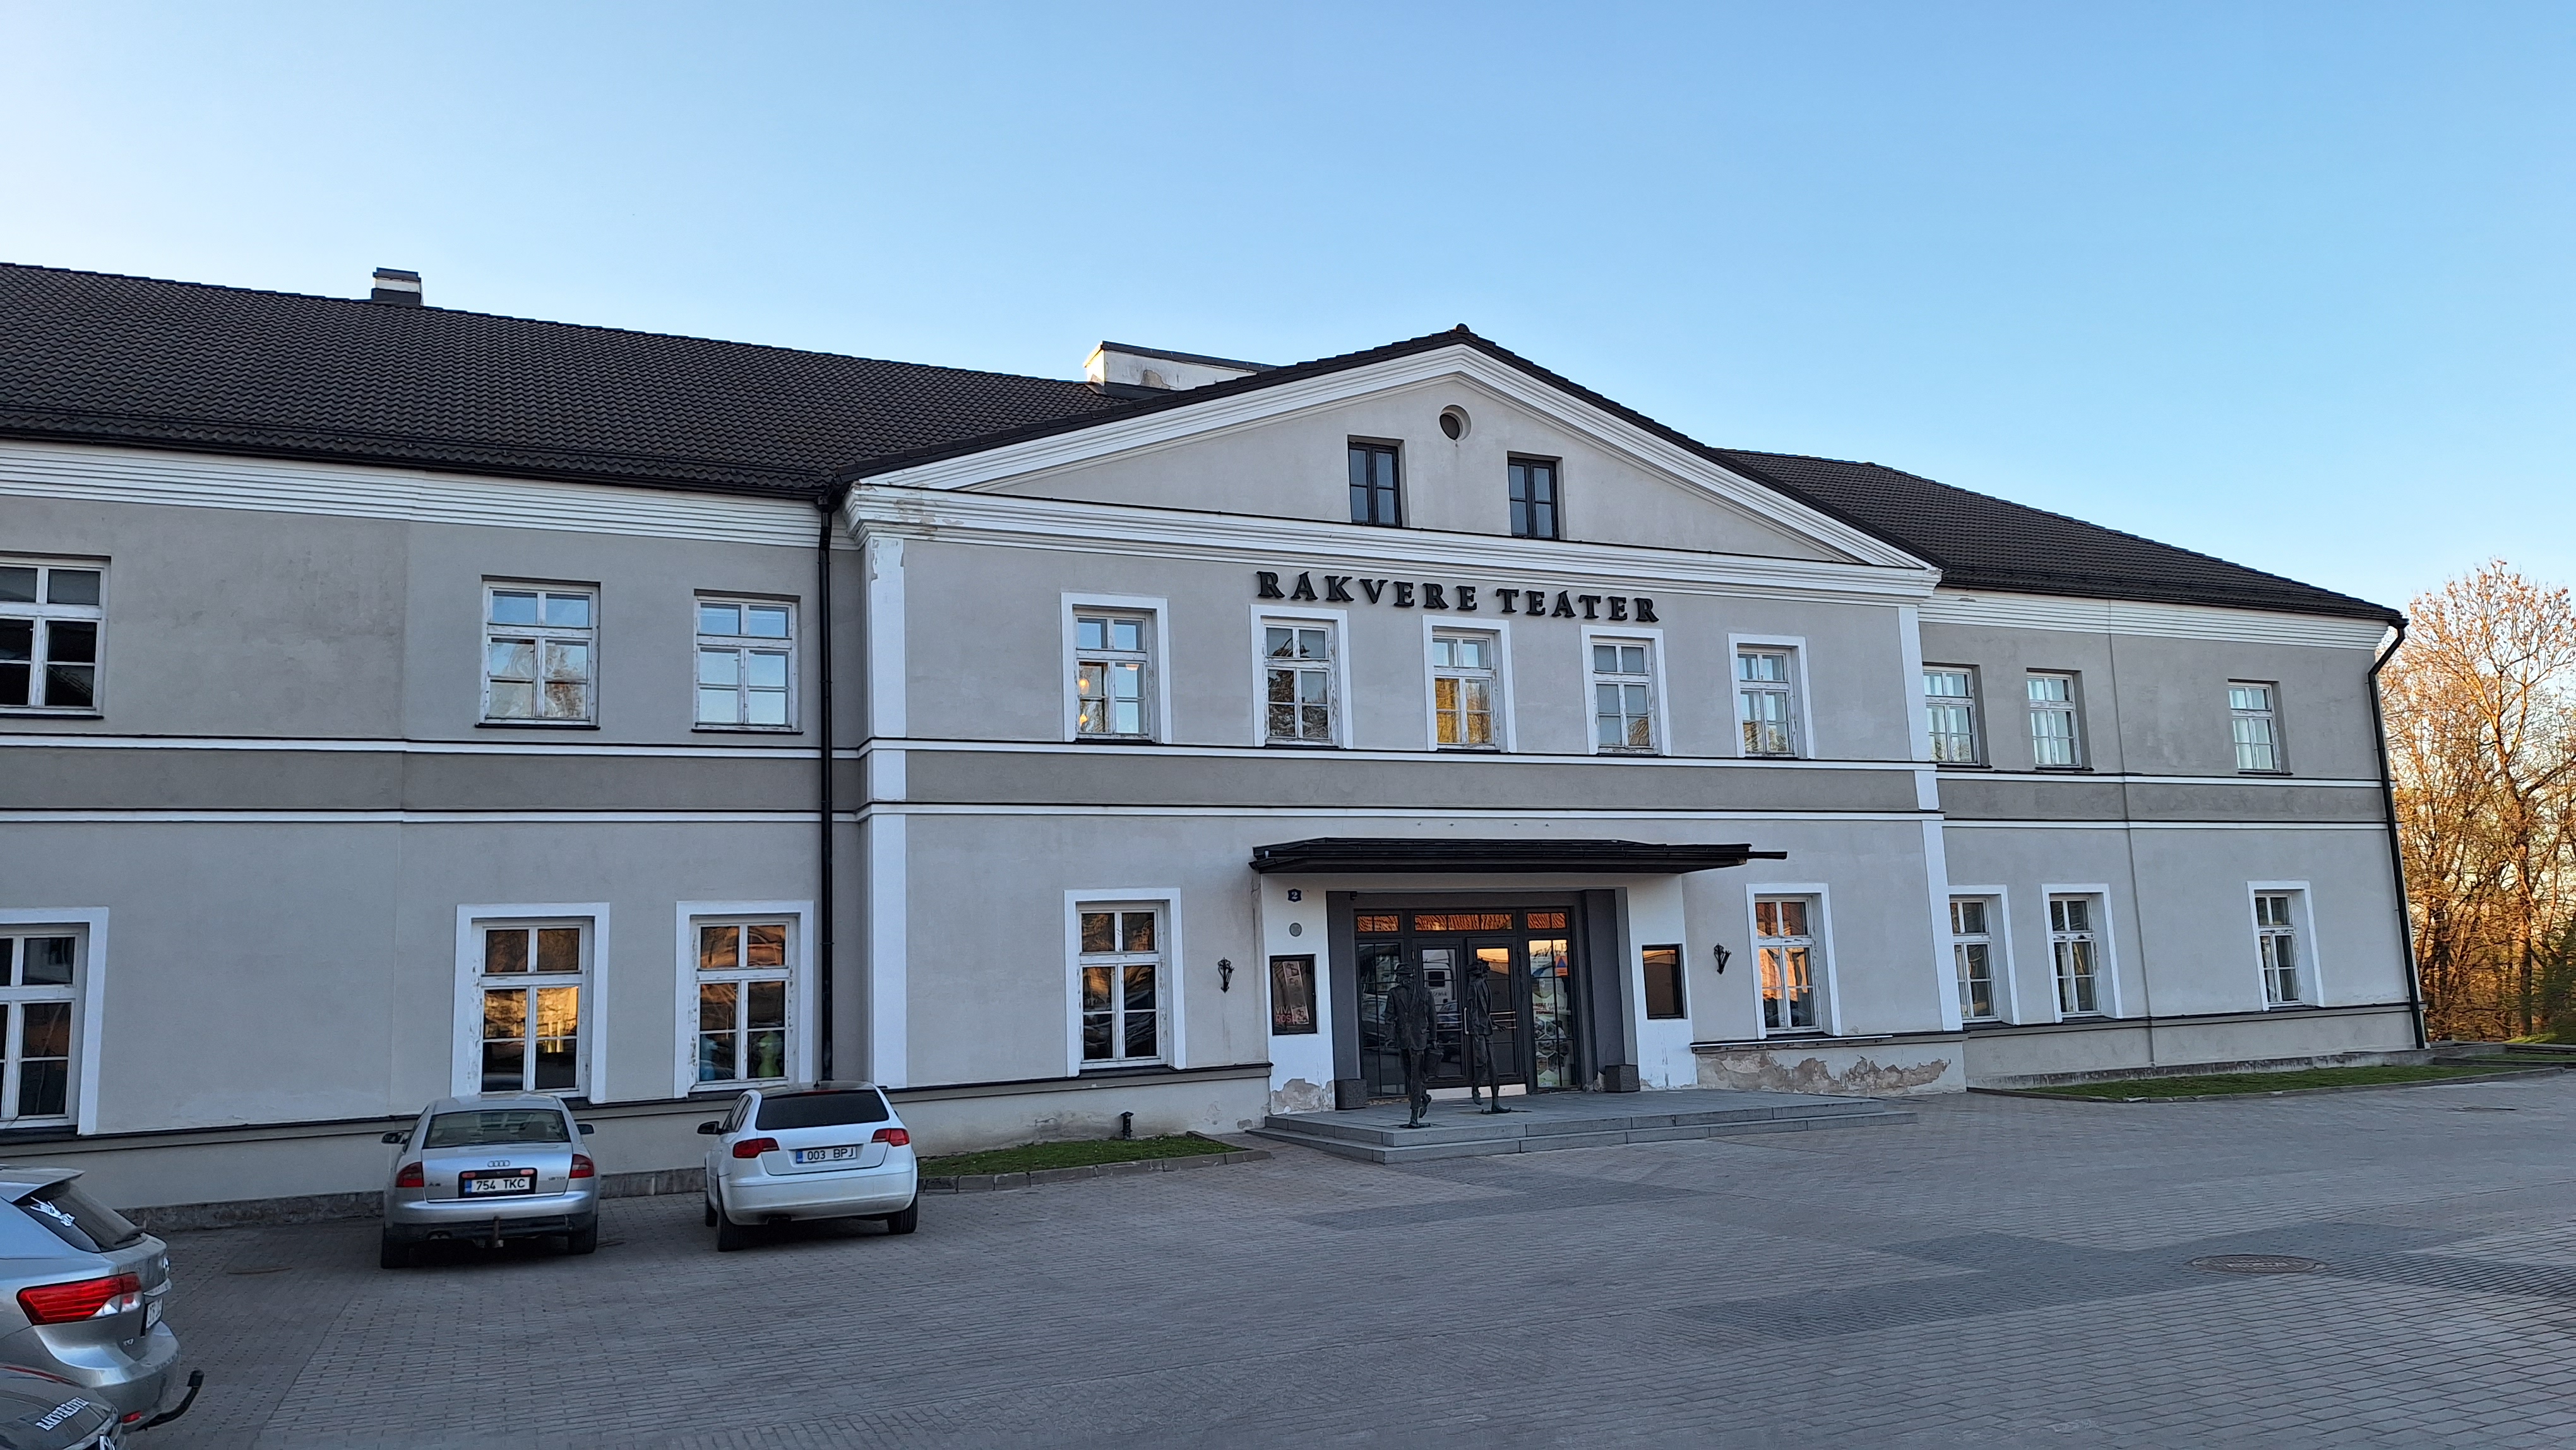 Rakvere Teater (1) - Rakvere Teater